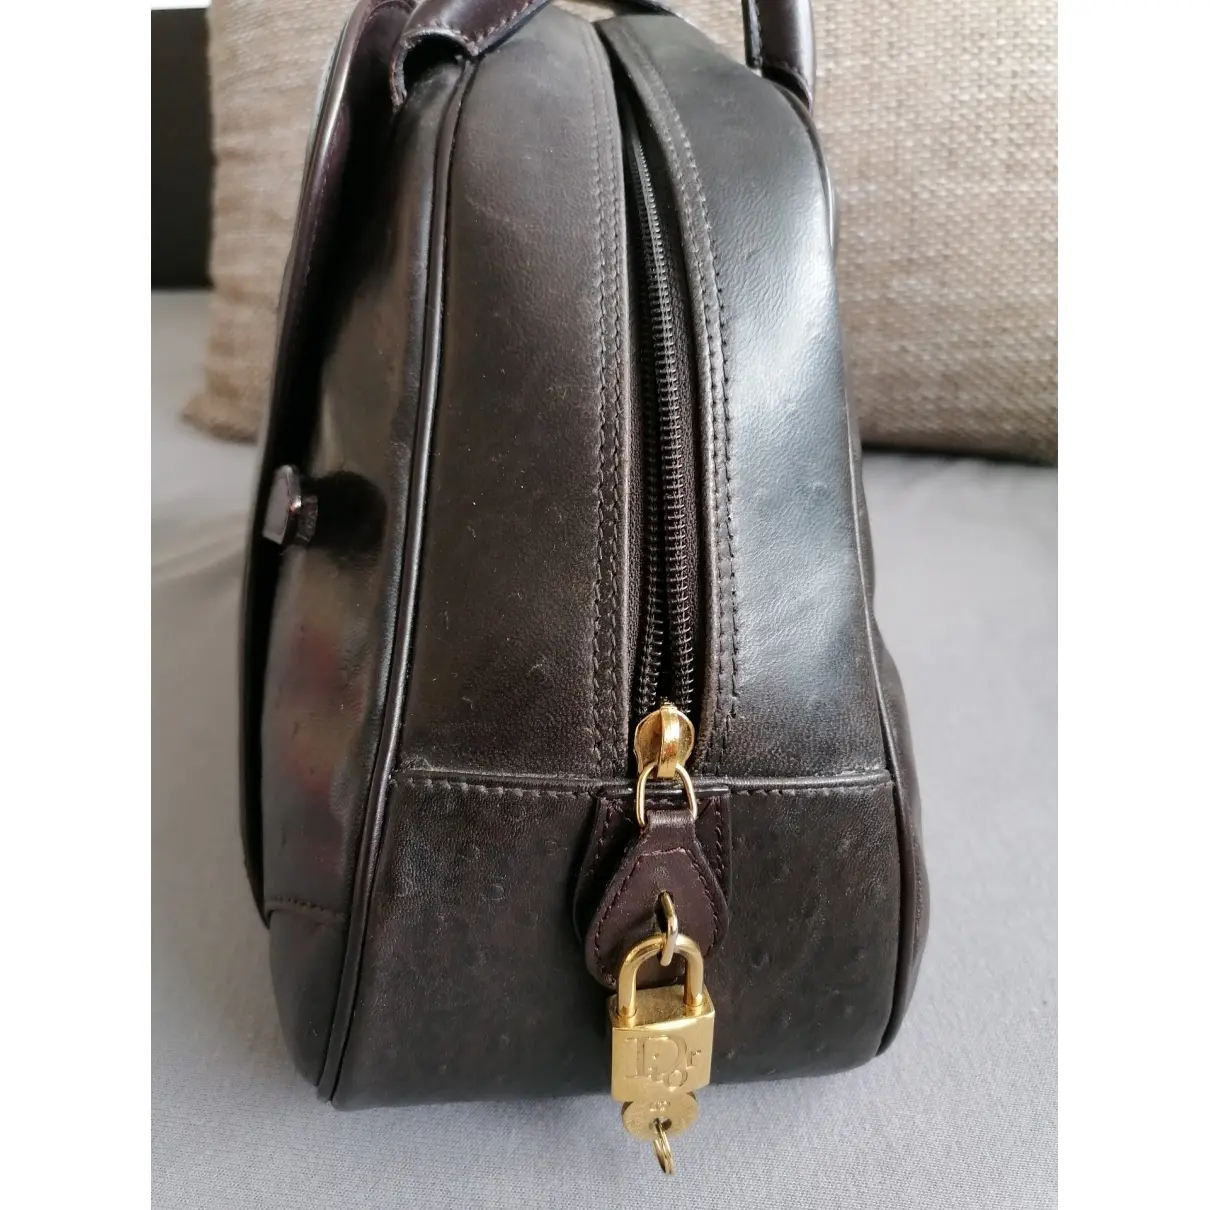 Buy Dior Saddle Bowler ostrich handbag online - Vintage